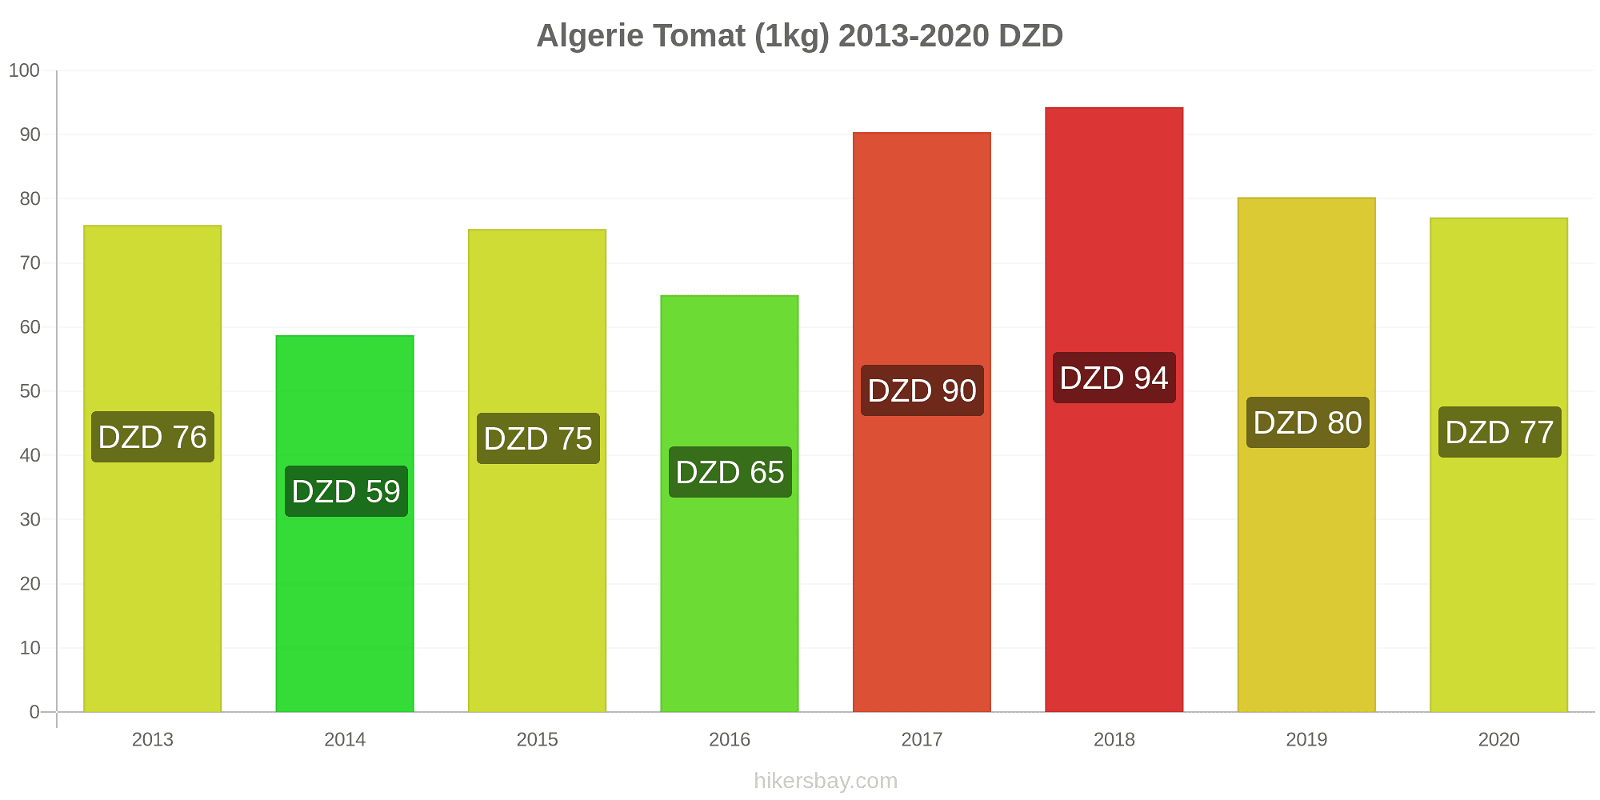 Algerie prisendringer Tomat (1kg) hikersbay.com